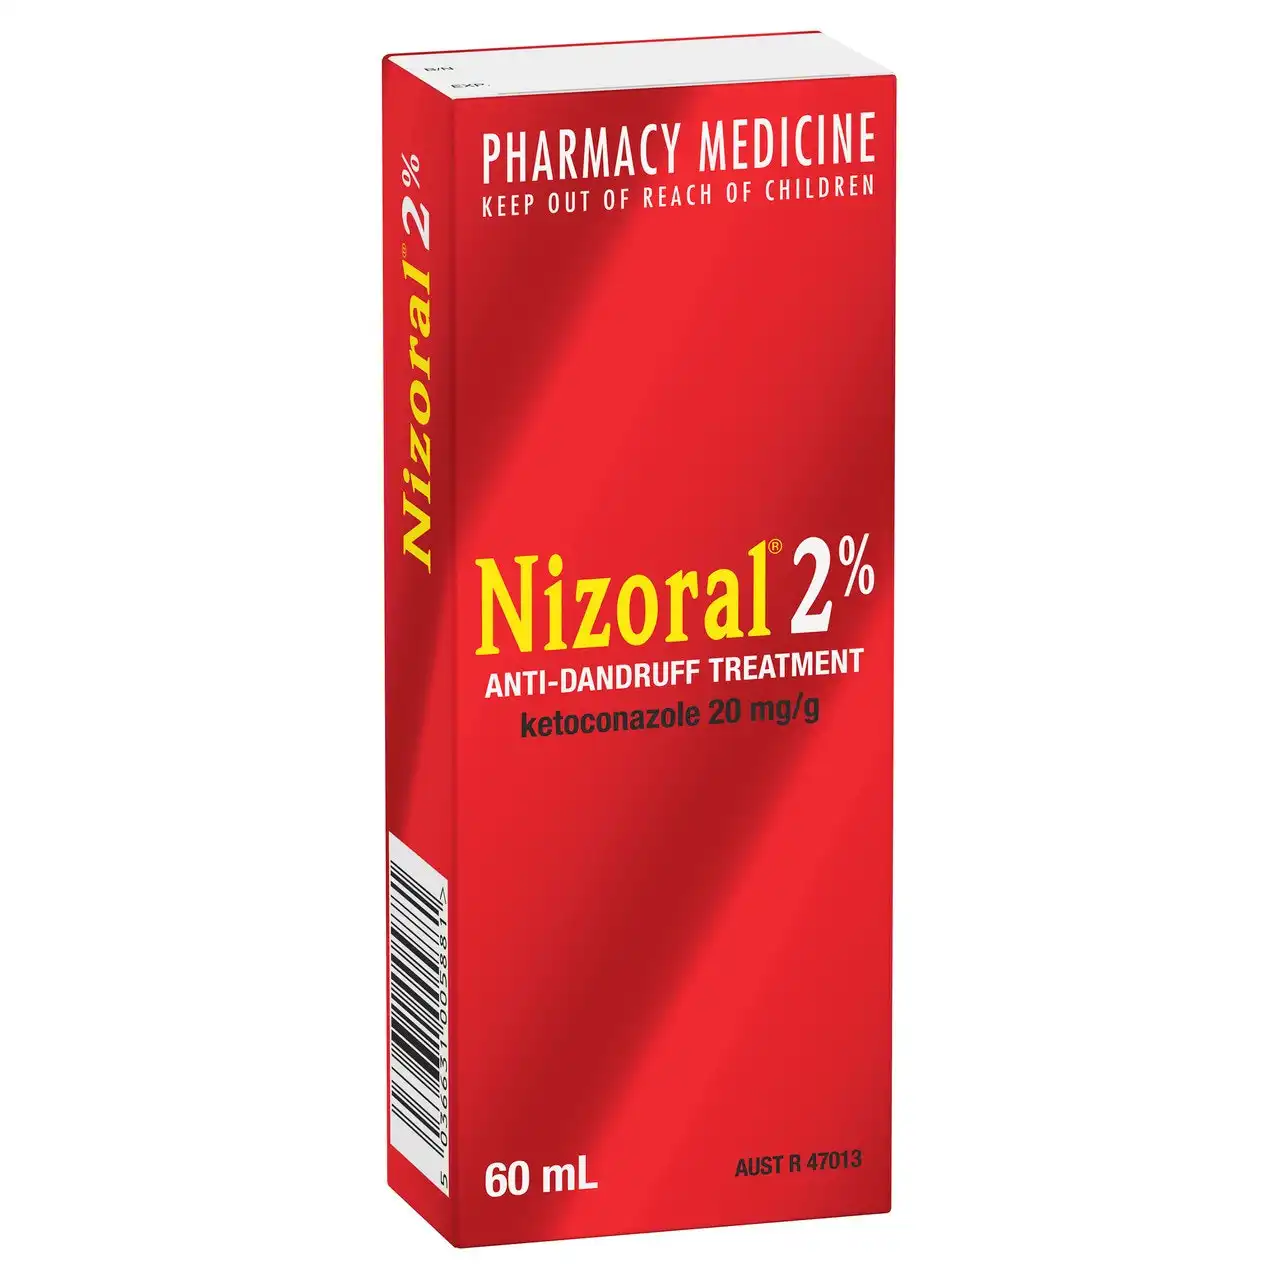 NIZORAL 2% Anti-Dandruff Treatment 60mL